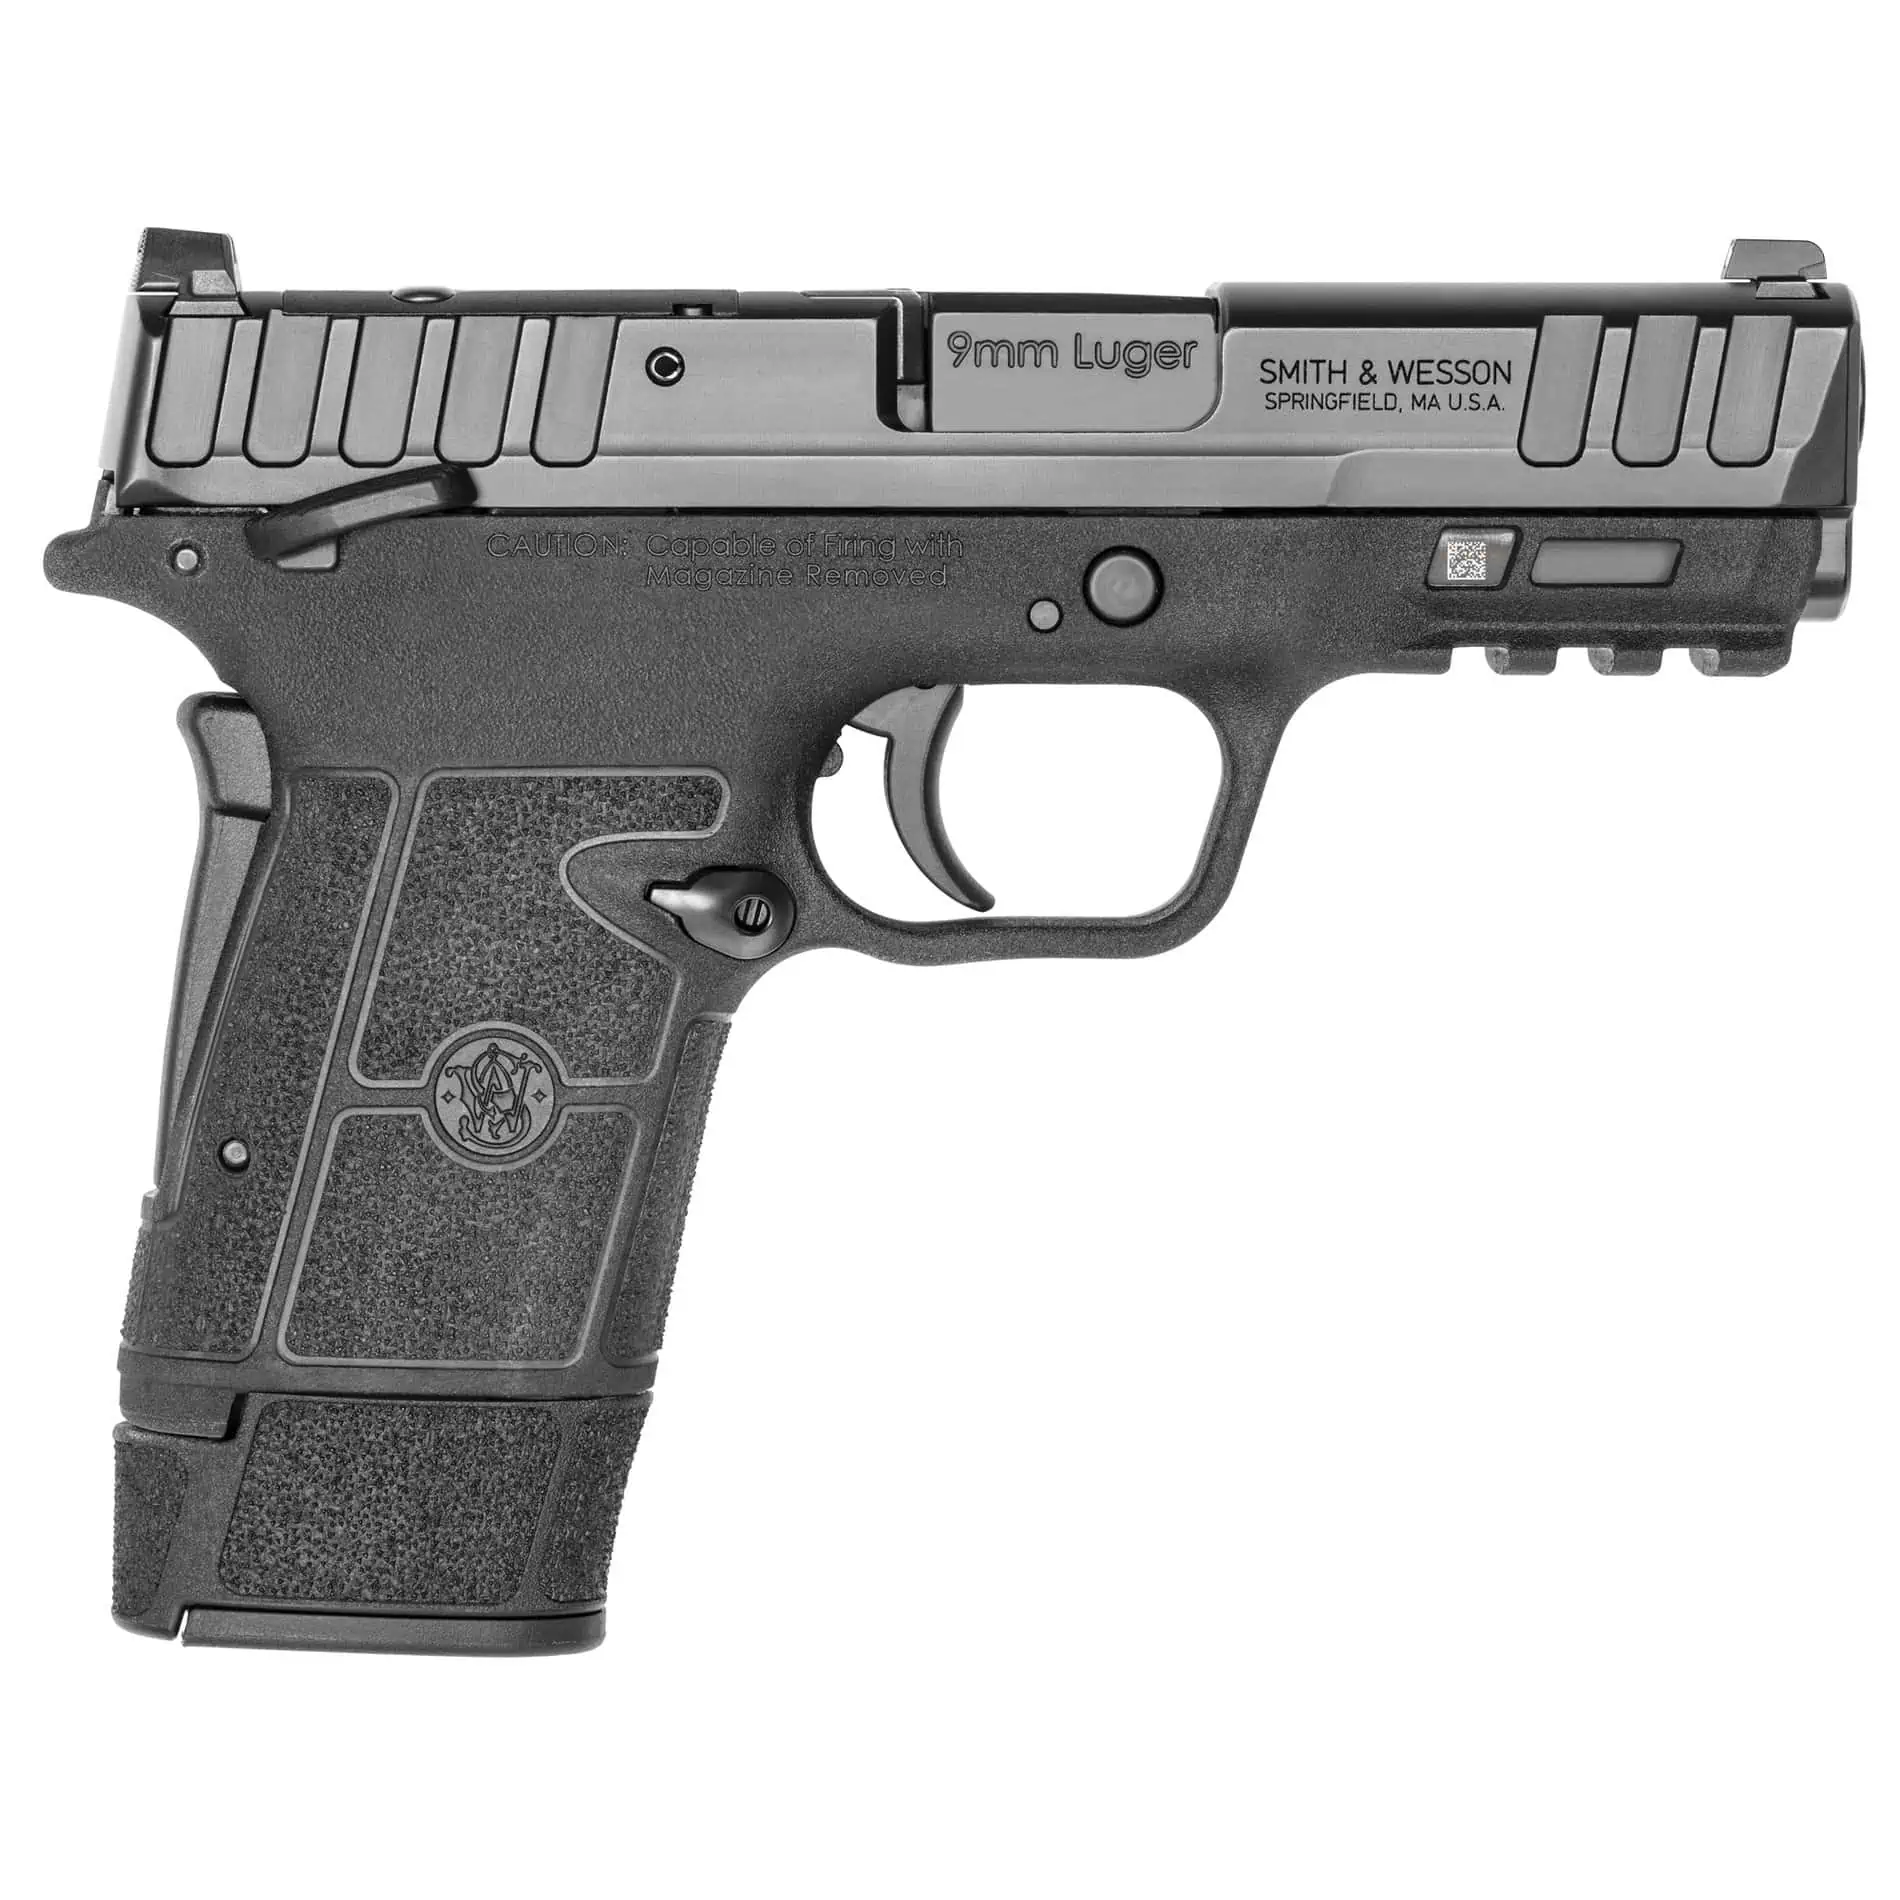 S&W Equalizer 9mm 3.675" Pistol - 15 Round - Black